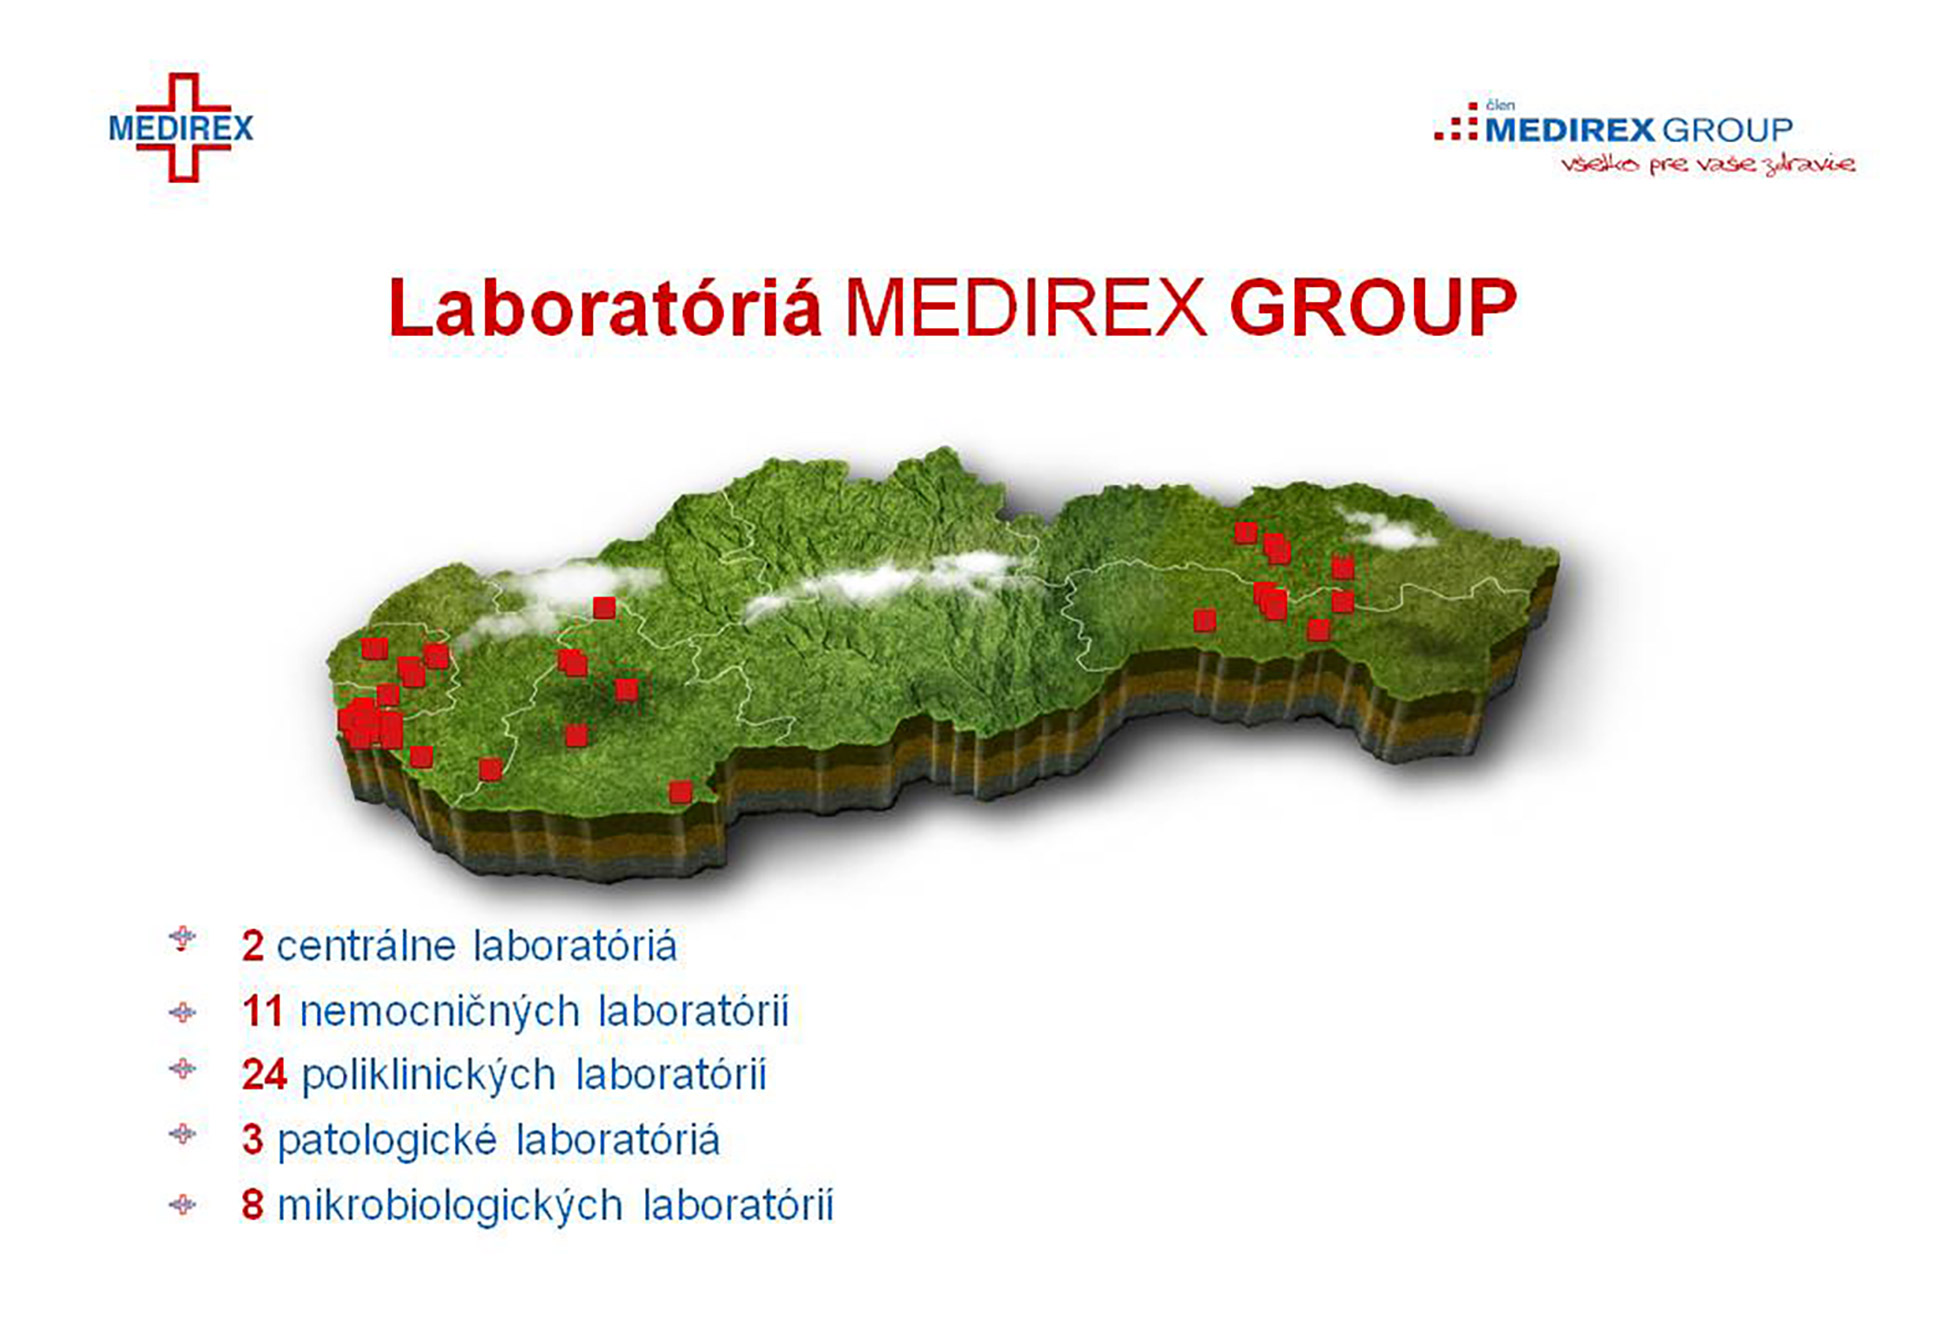 Анимационная презентаия - Medirex